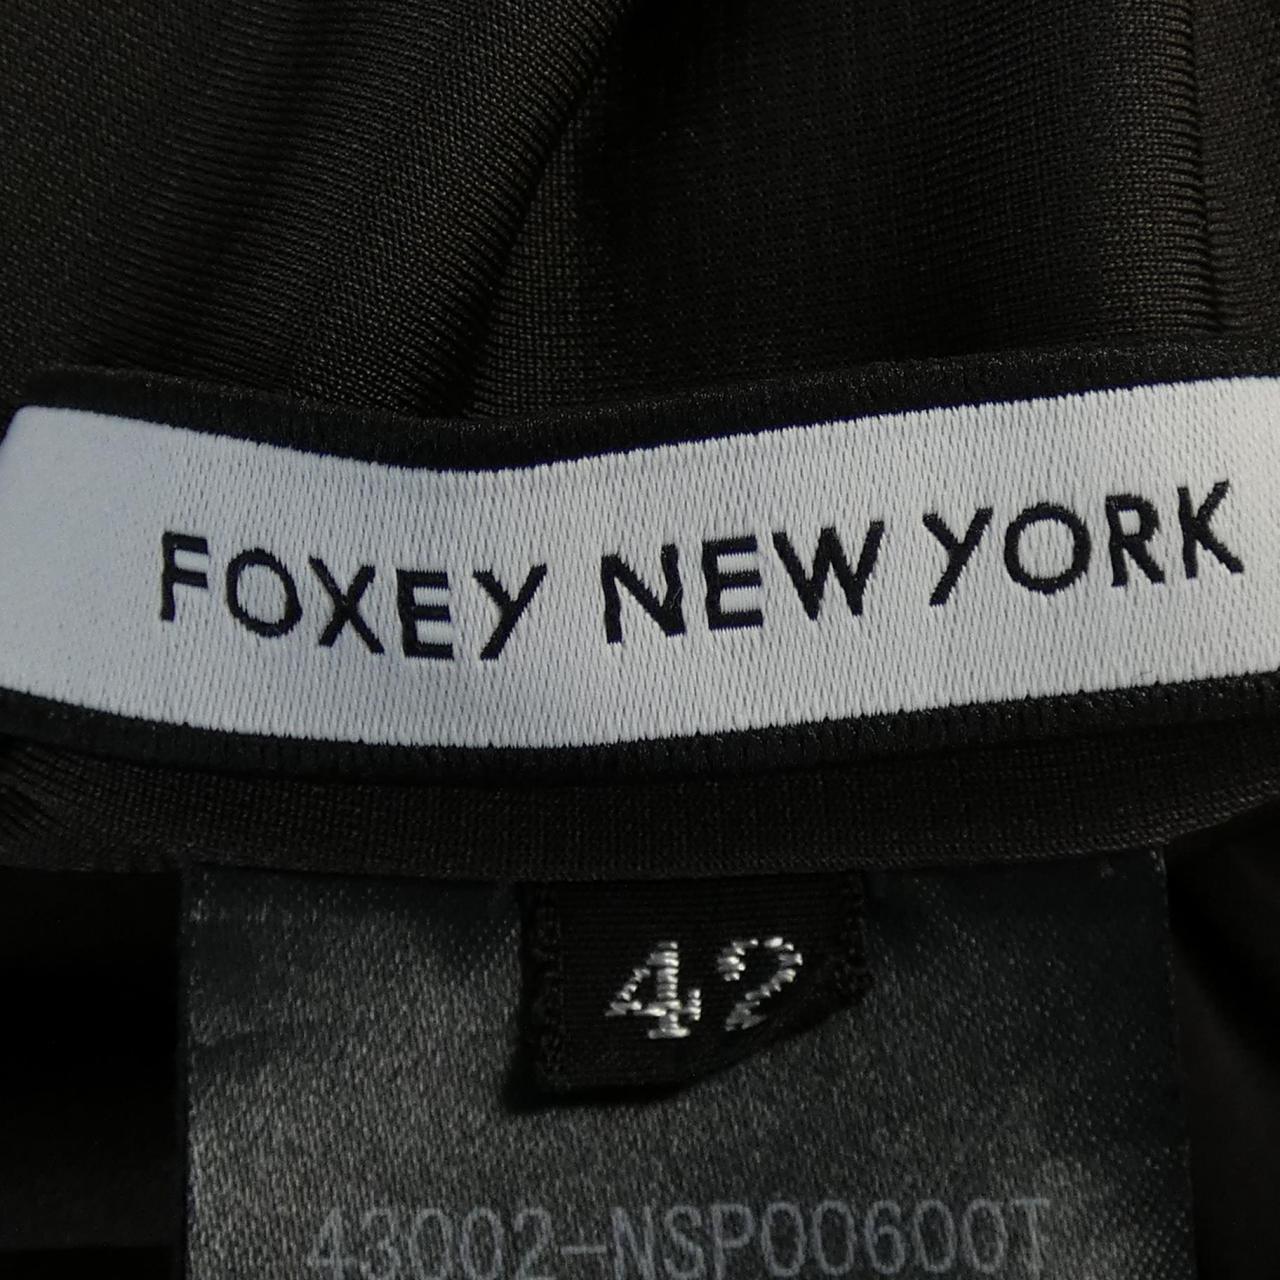 フォクシーニューヨーク FOXEY NEW YORK パンツ